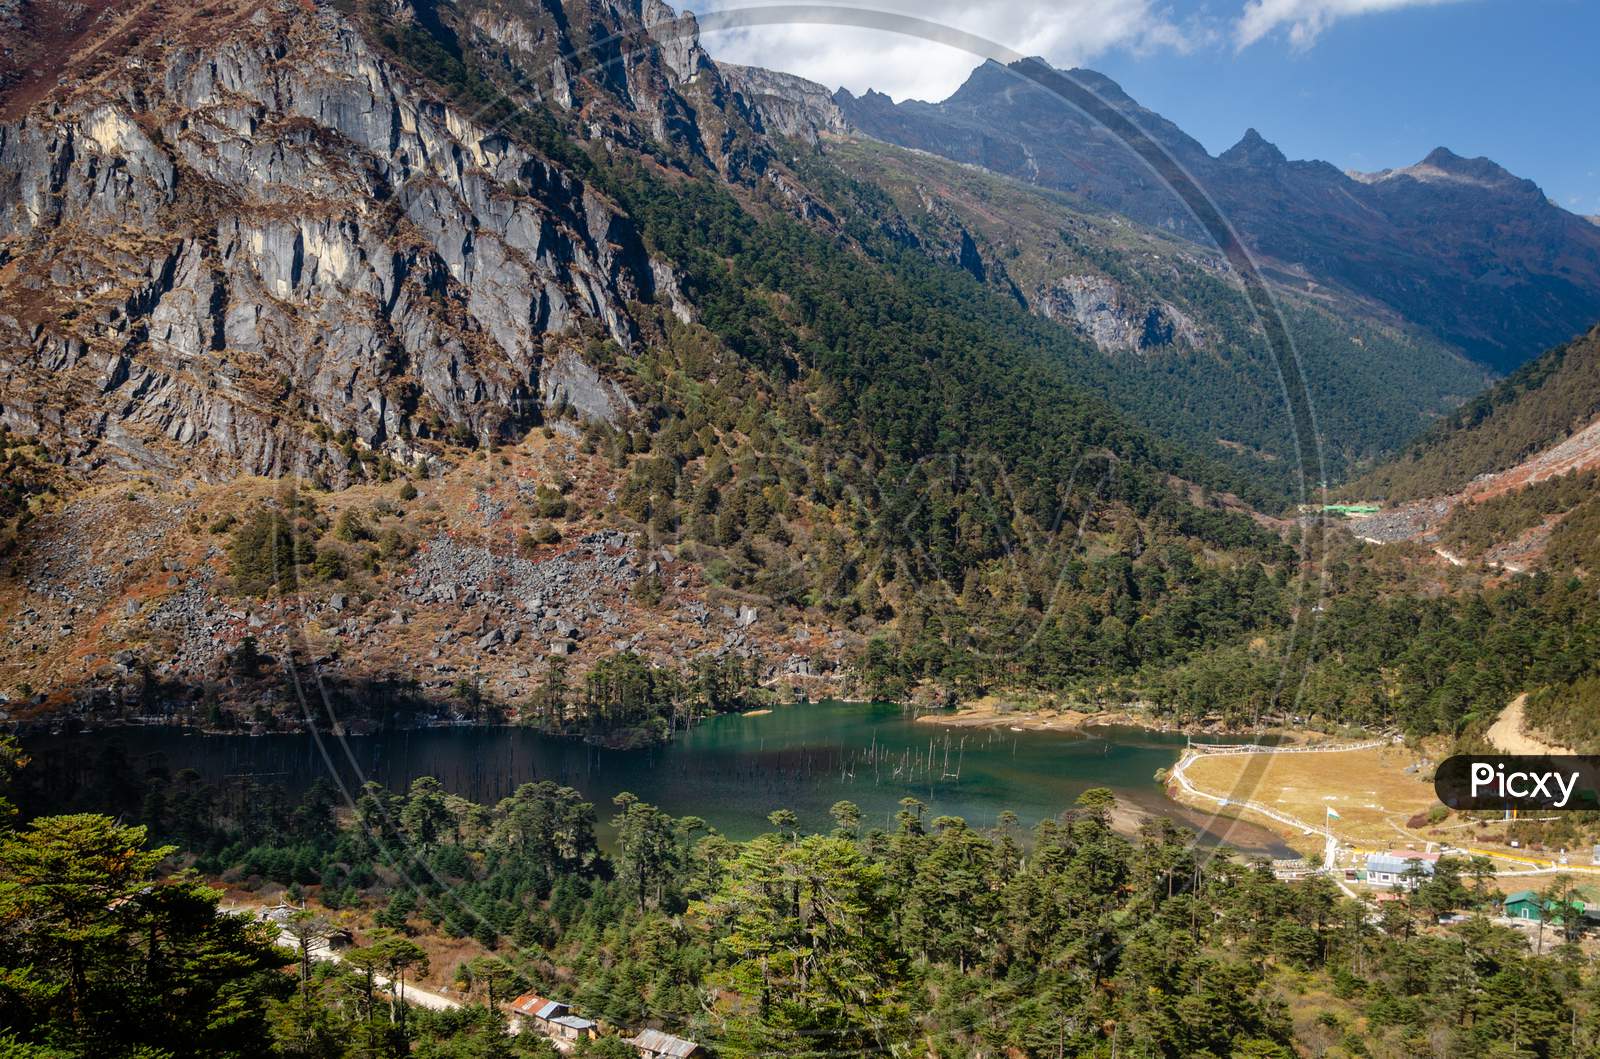 Sangetsar lake in Arunachal Pradesh, India